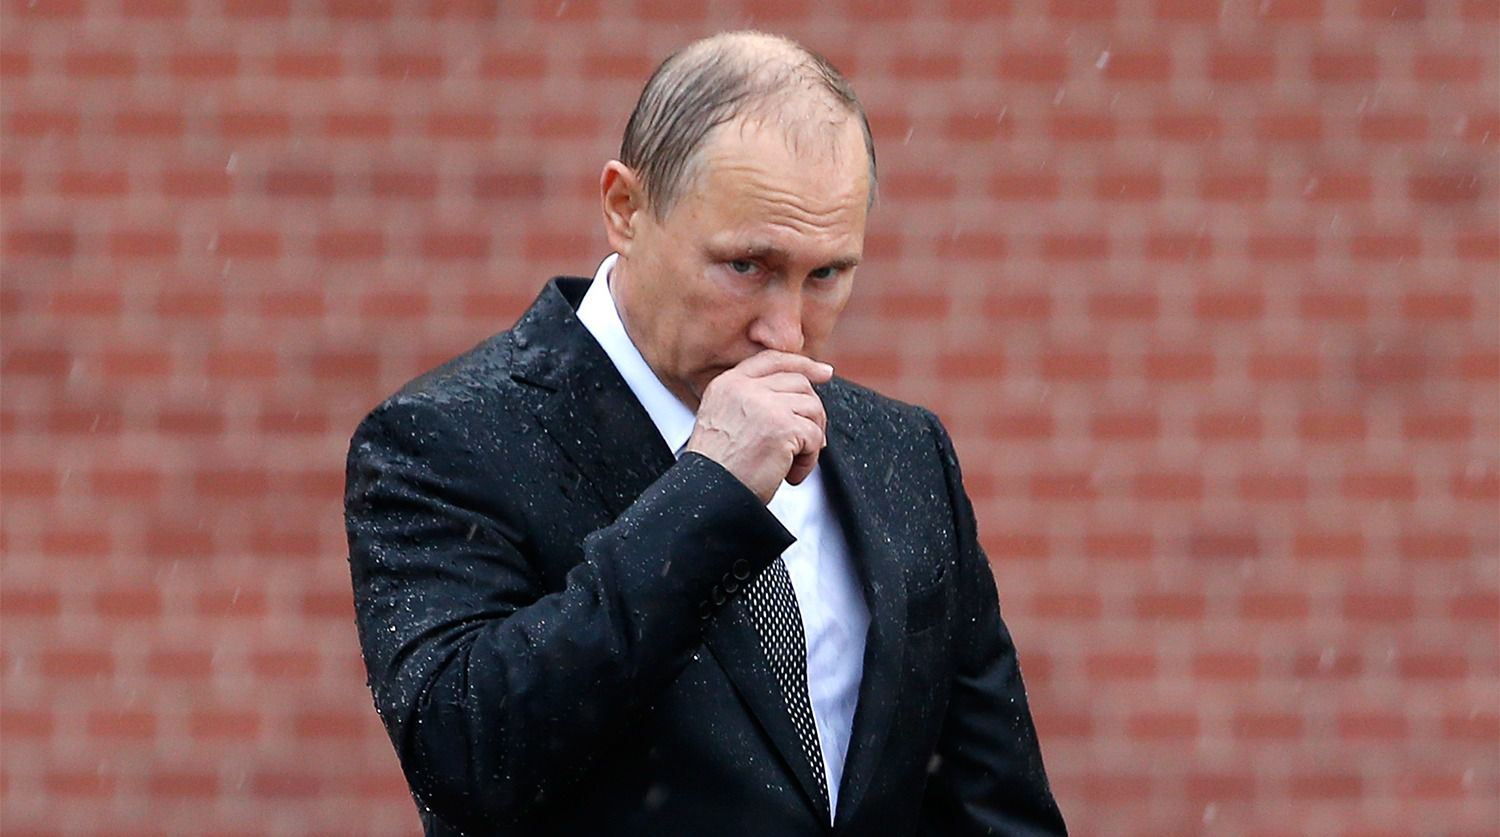 Російський опозиціонер і політик Михайло Ходорковський  озвучив два варіанти відходу Путіна. Він же не може просто розчинитися в тумані. Існує, за великим рахунком, два реальних варіанти...